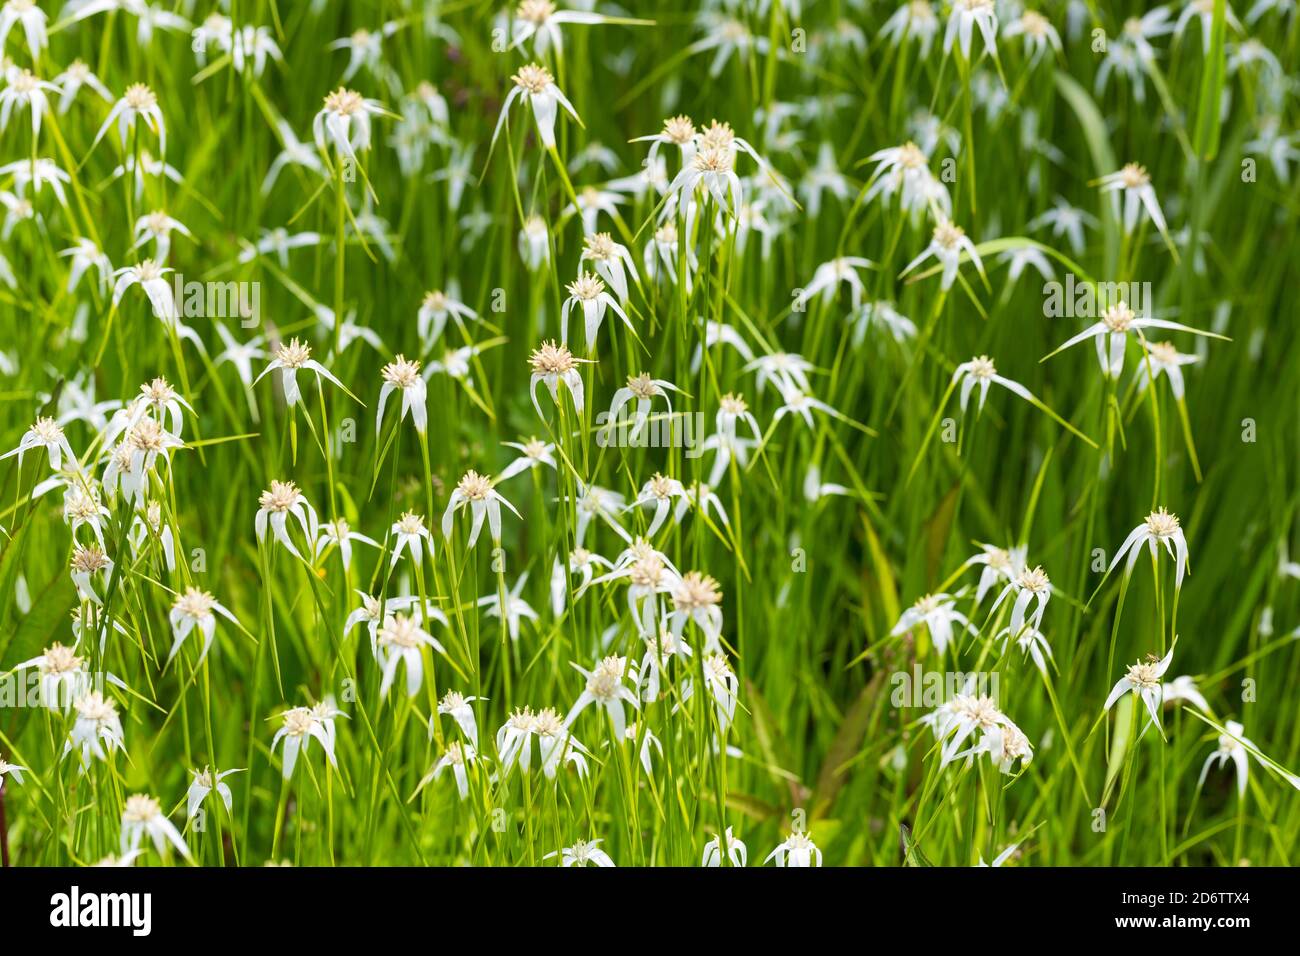 White star grass, Dichromena latifolia Stock Photo